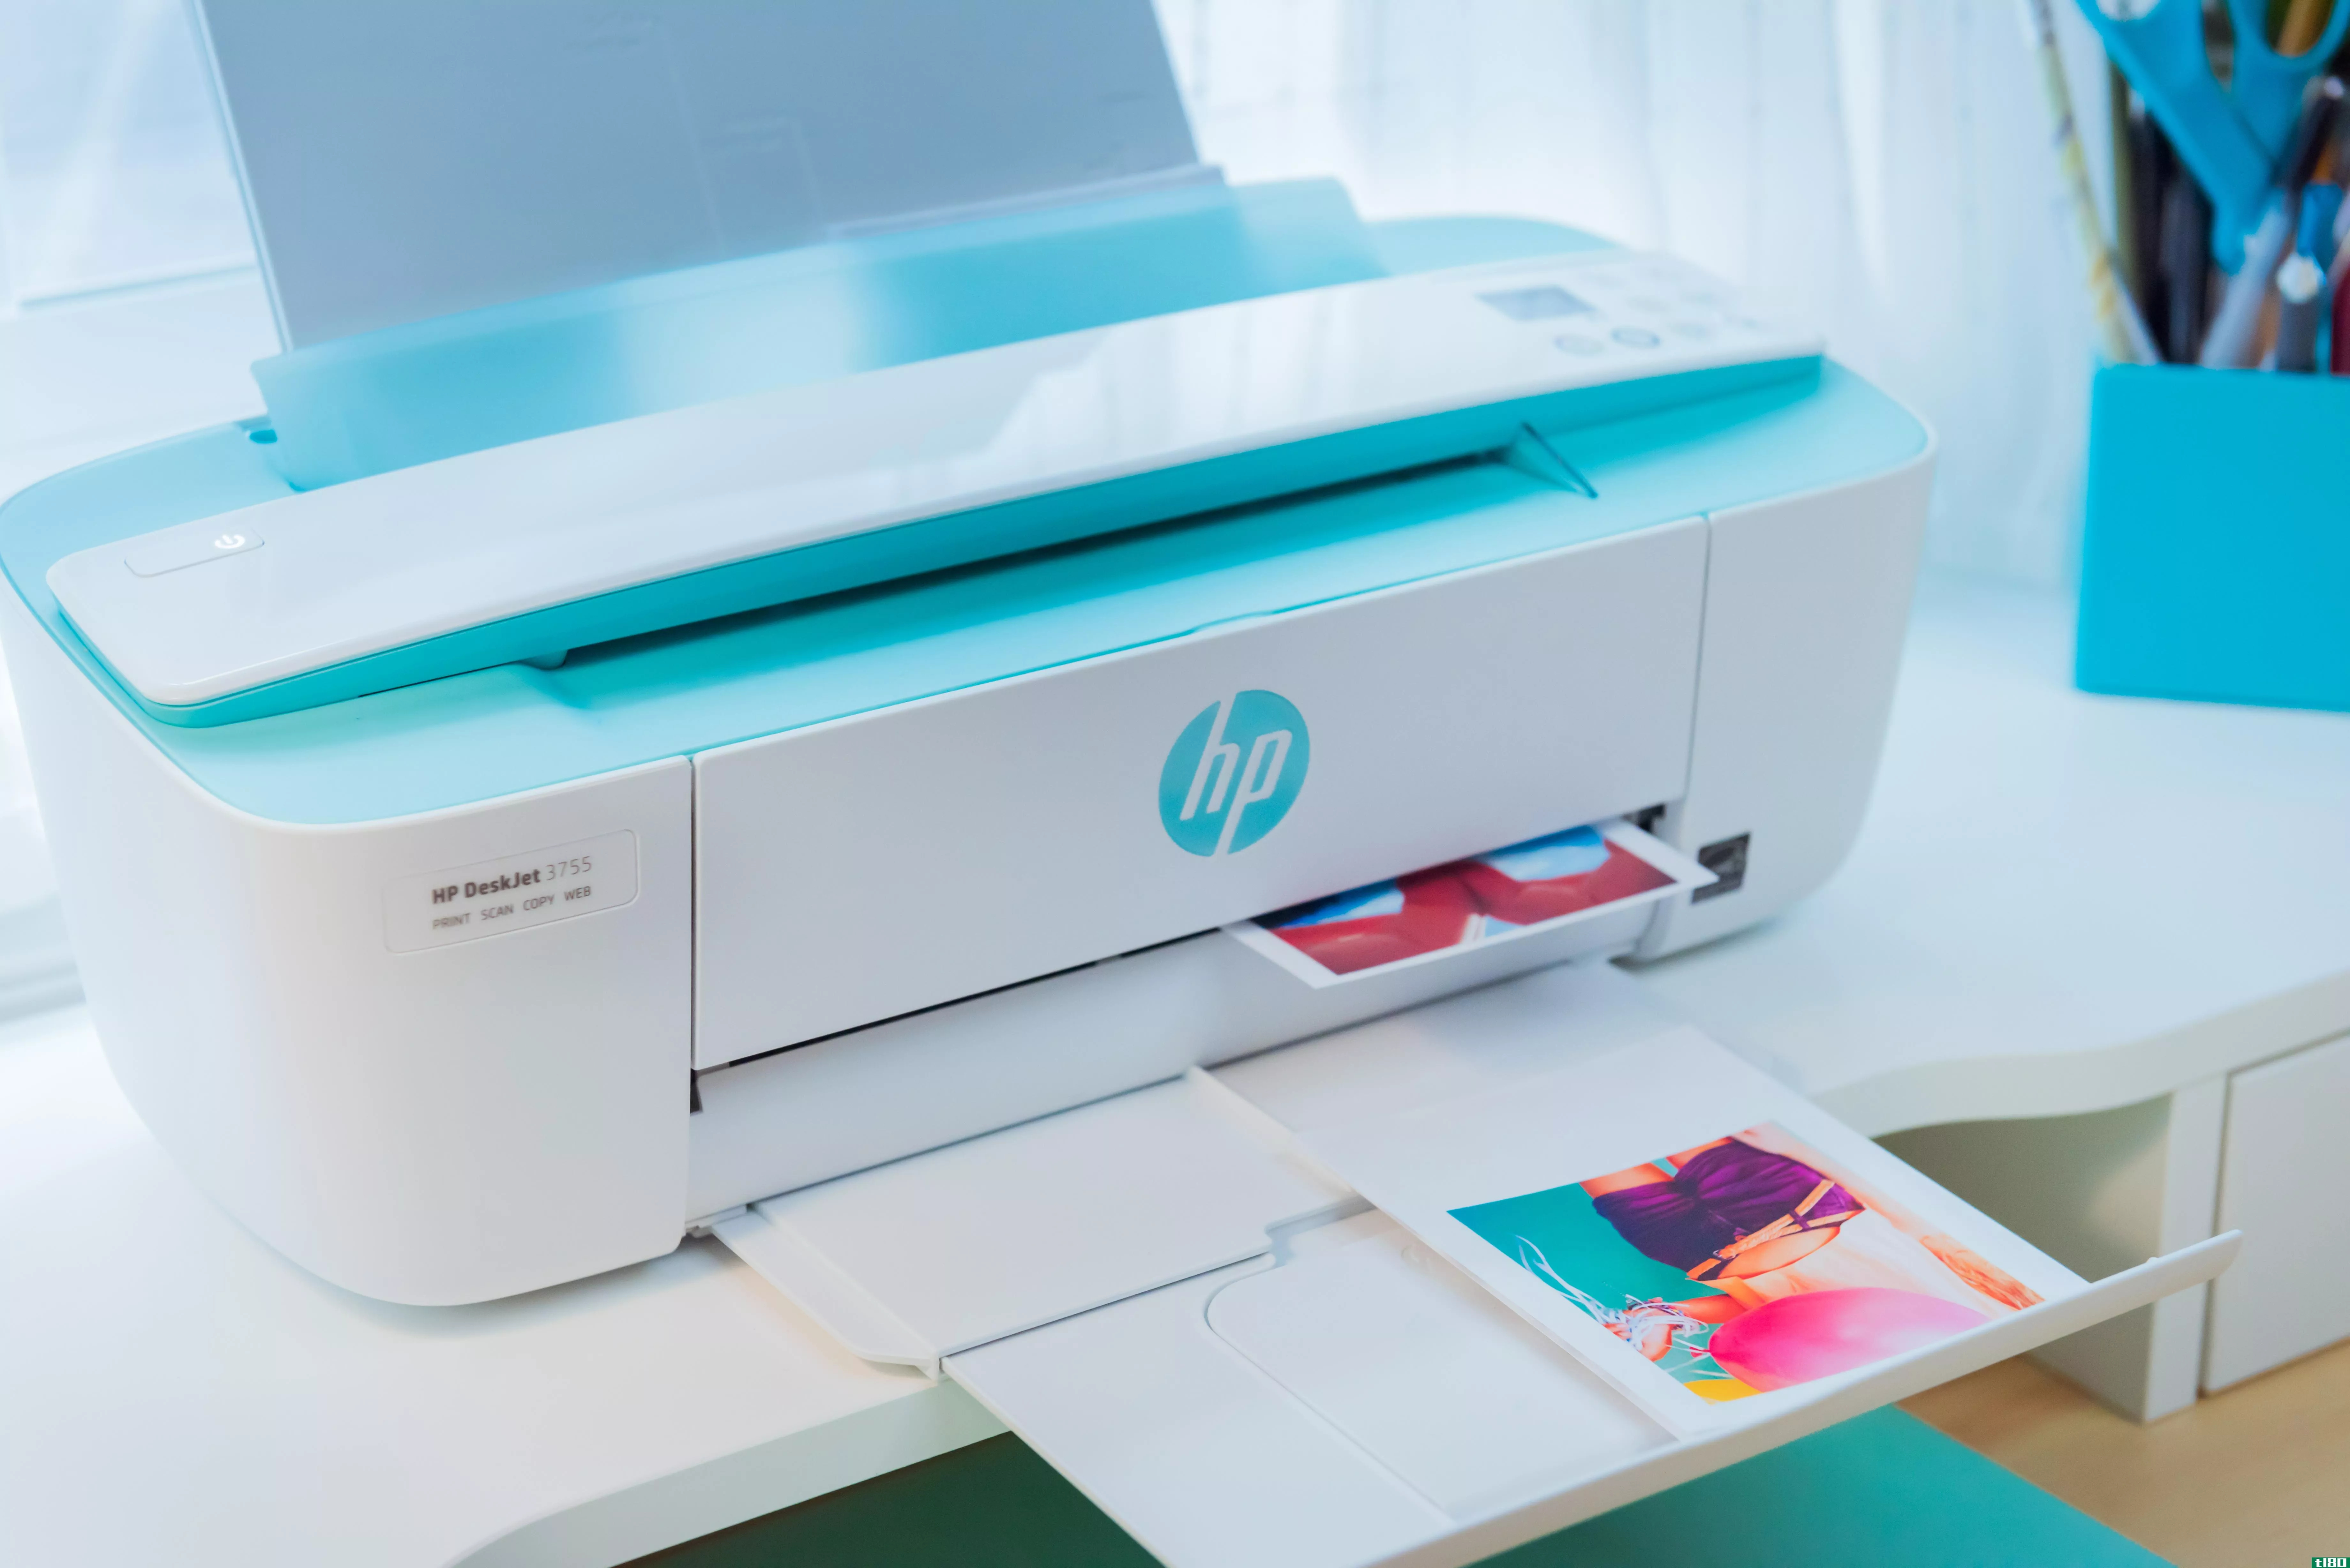 惠普宣布推出“世界上最小的一体机打印机”，但它已经生产了一台更小的打印机